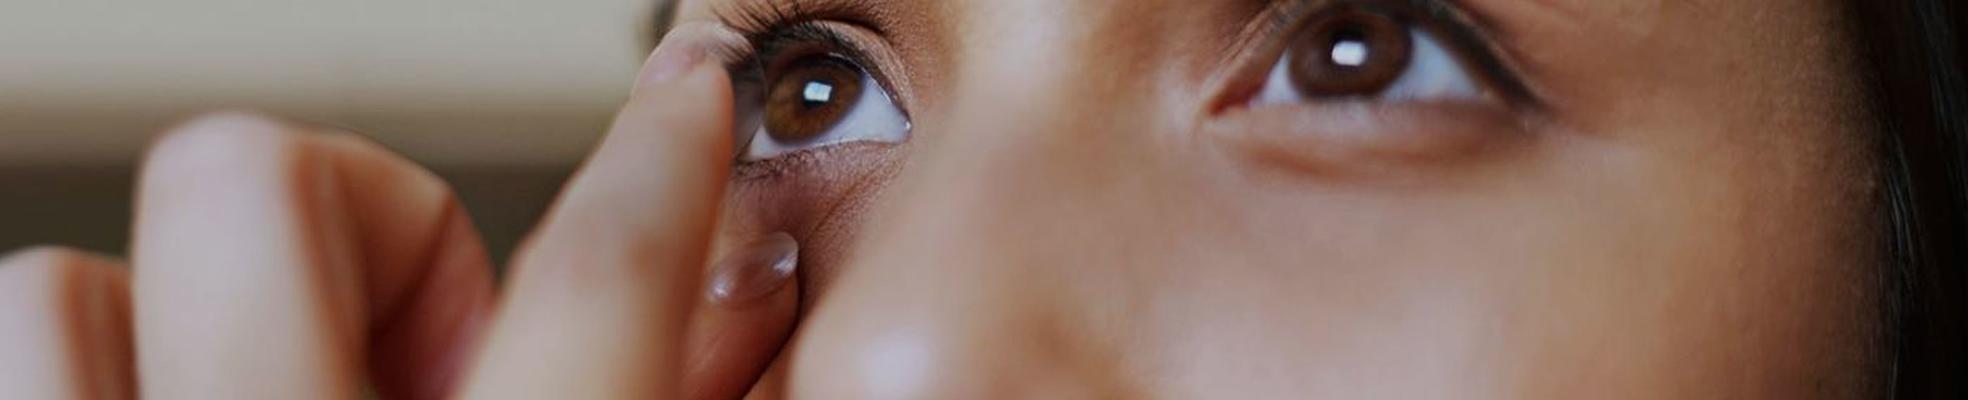 Как правильно надевать и снимать контактные линзы: подробная инструкция